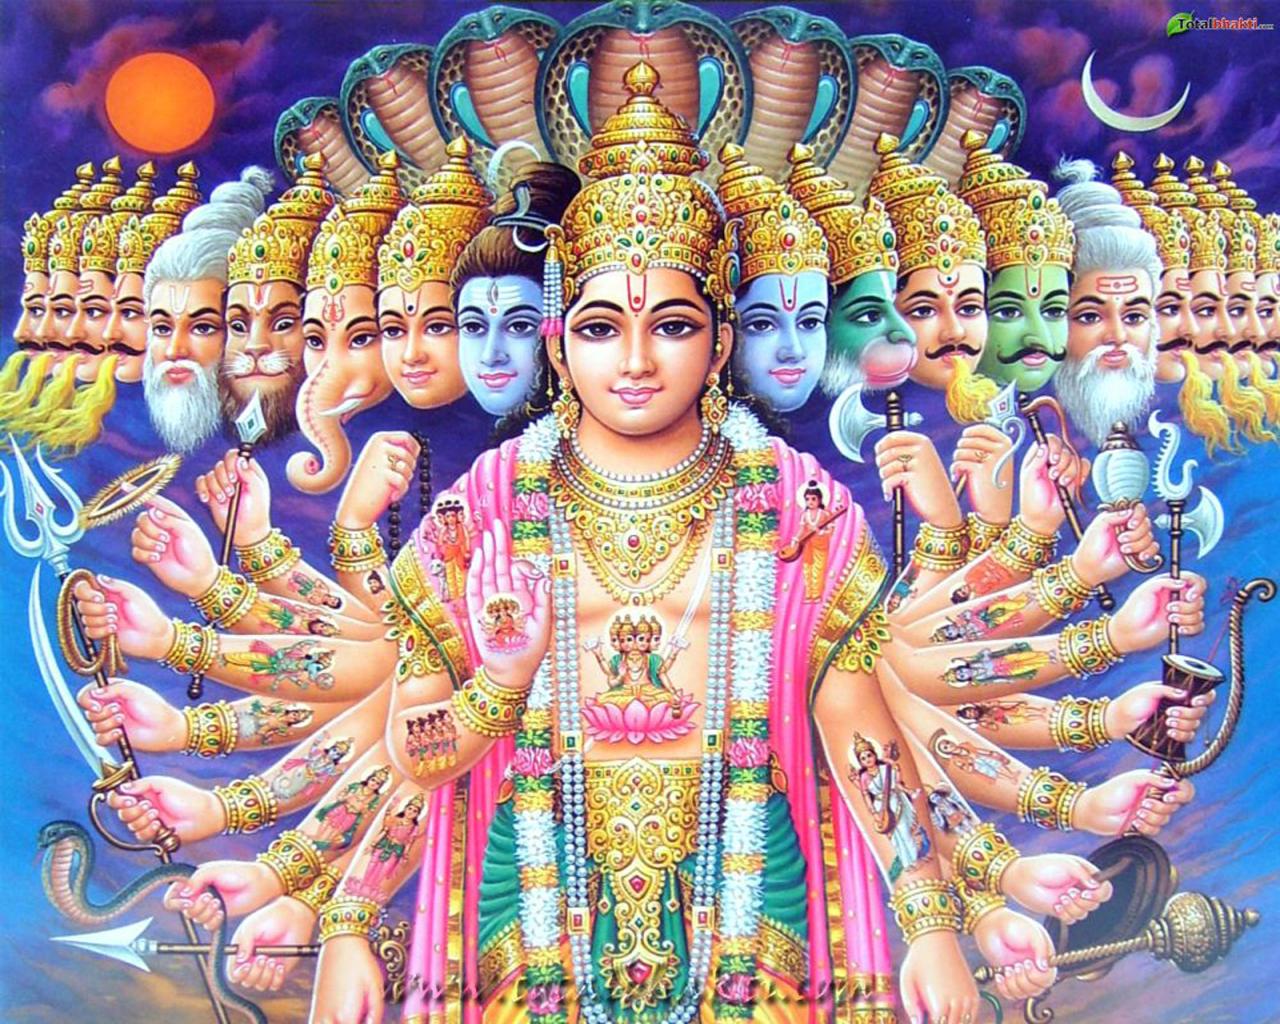 Lord Vishnu Wallpaper Hd - Full HD Wallpaper for Desktop, Mobile ...